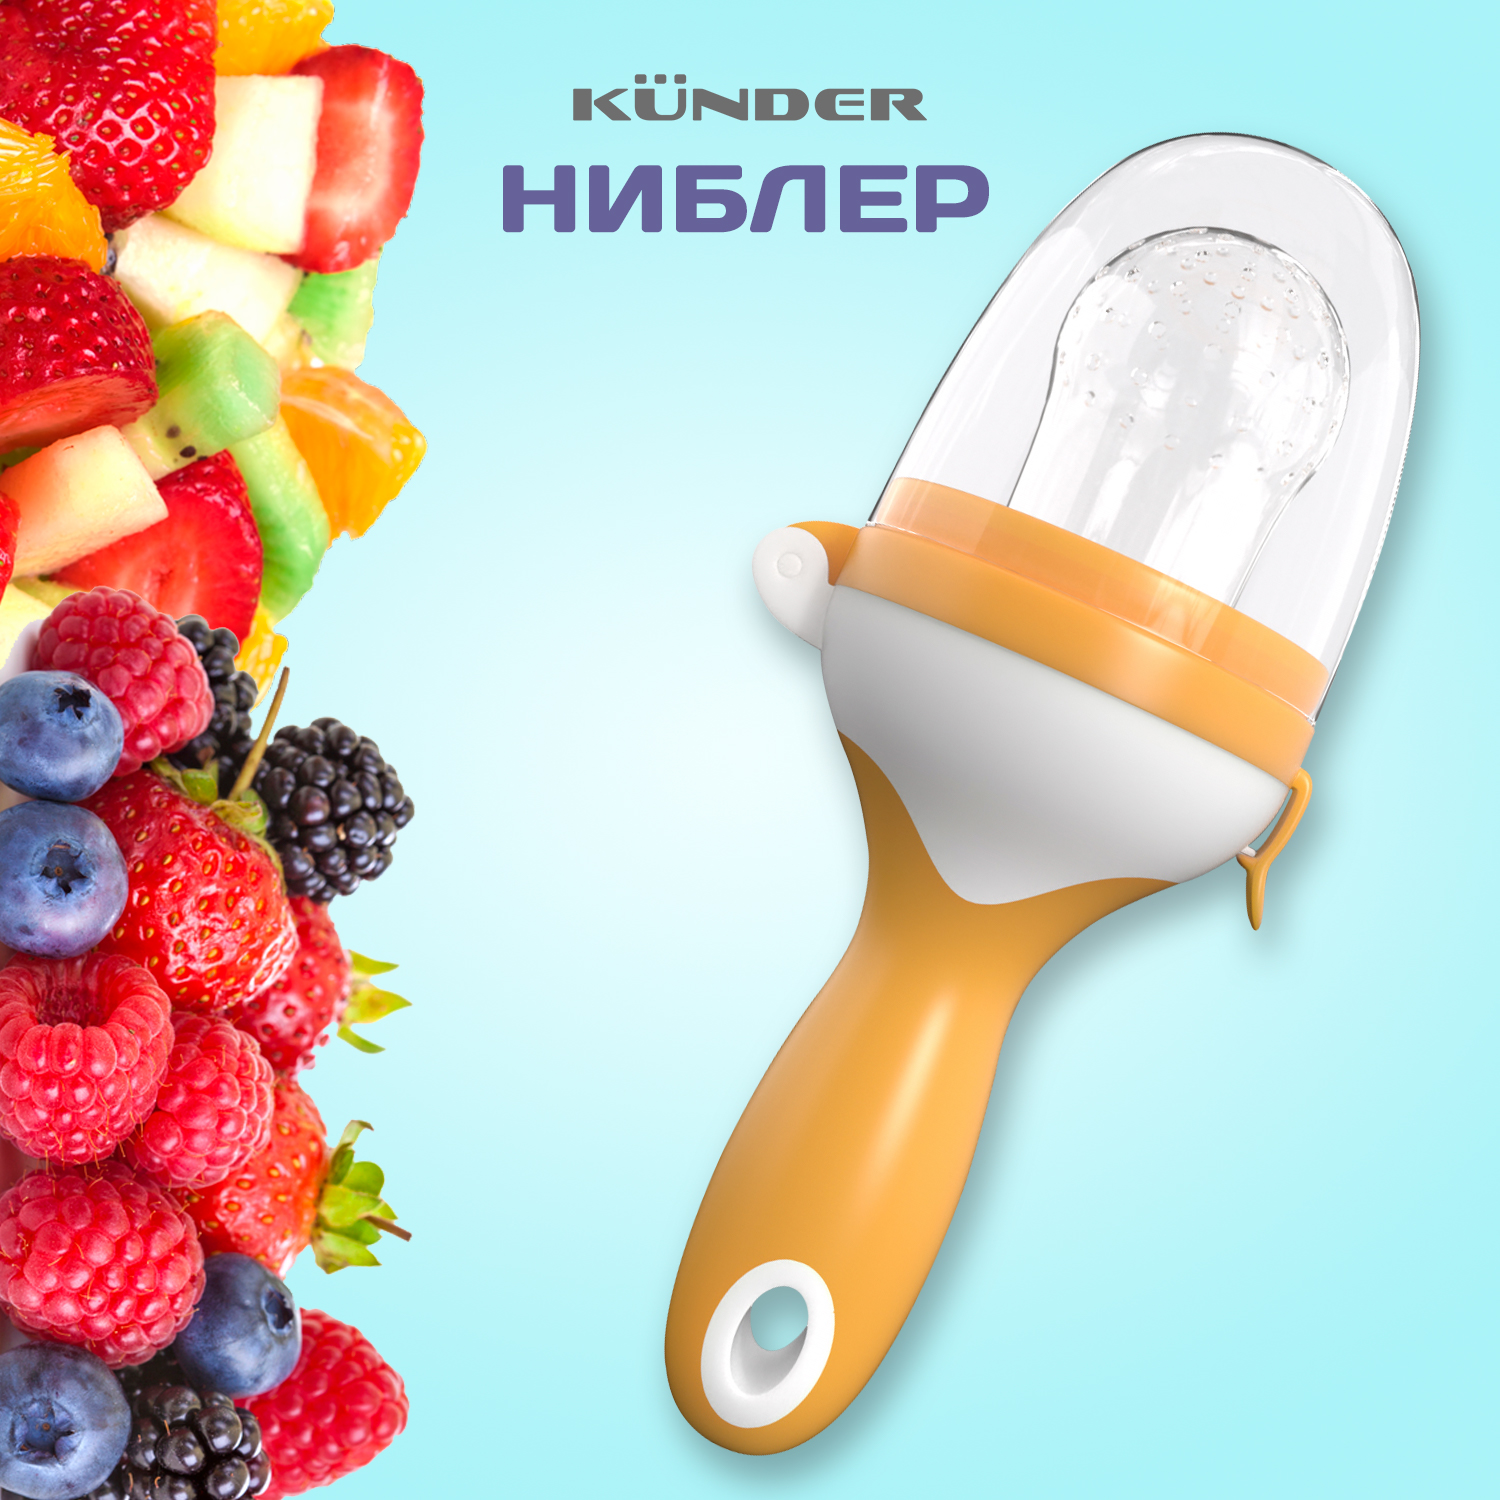 Ниблер для прикорма Kunder с силиконовой сеточкой, для фруктов и ягод, оранжевый